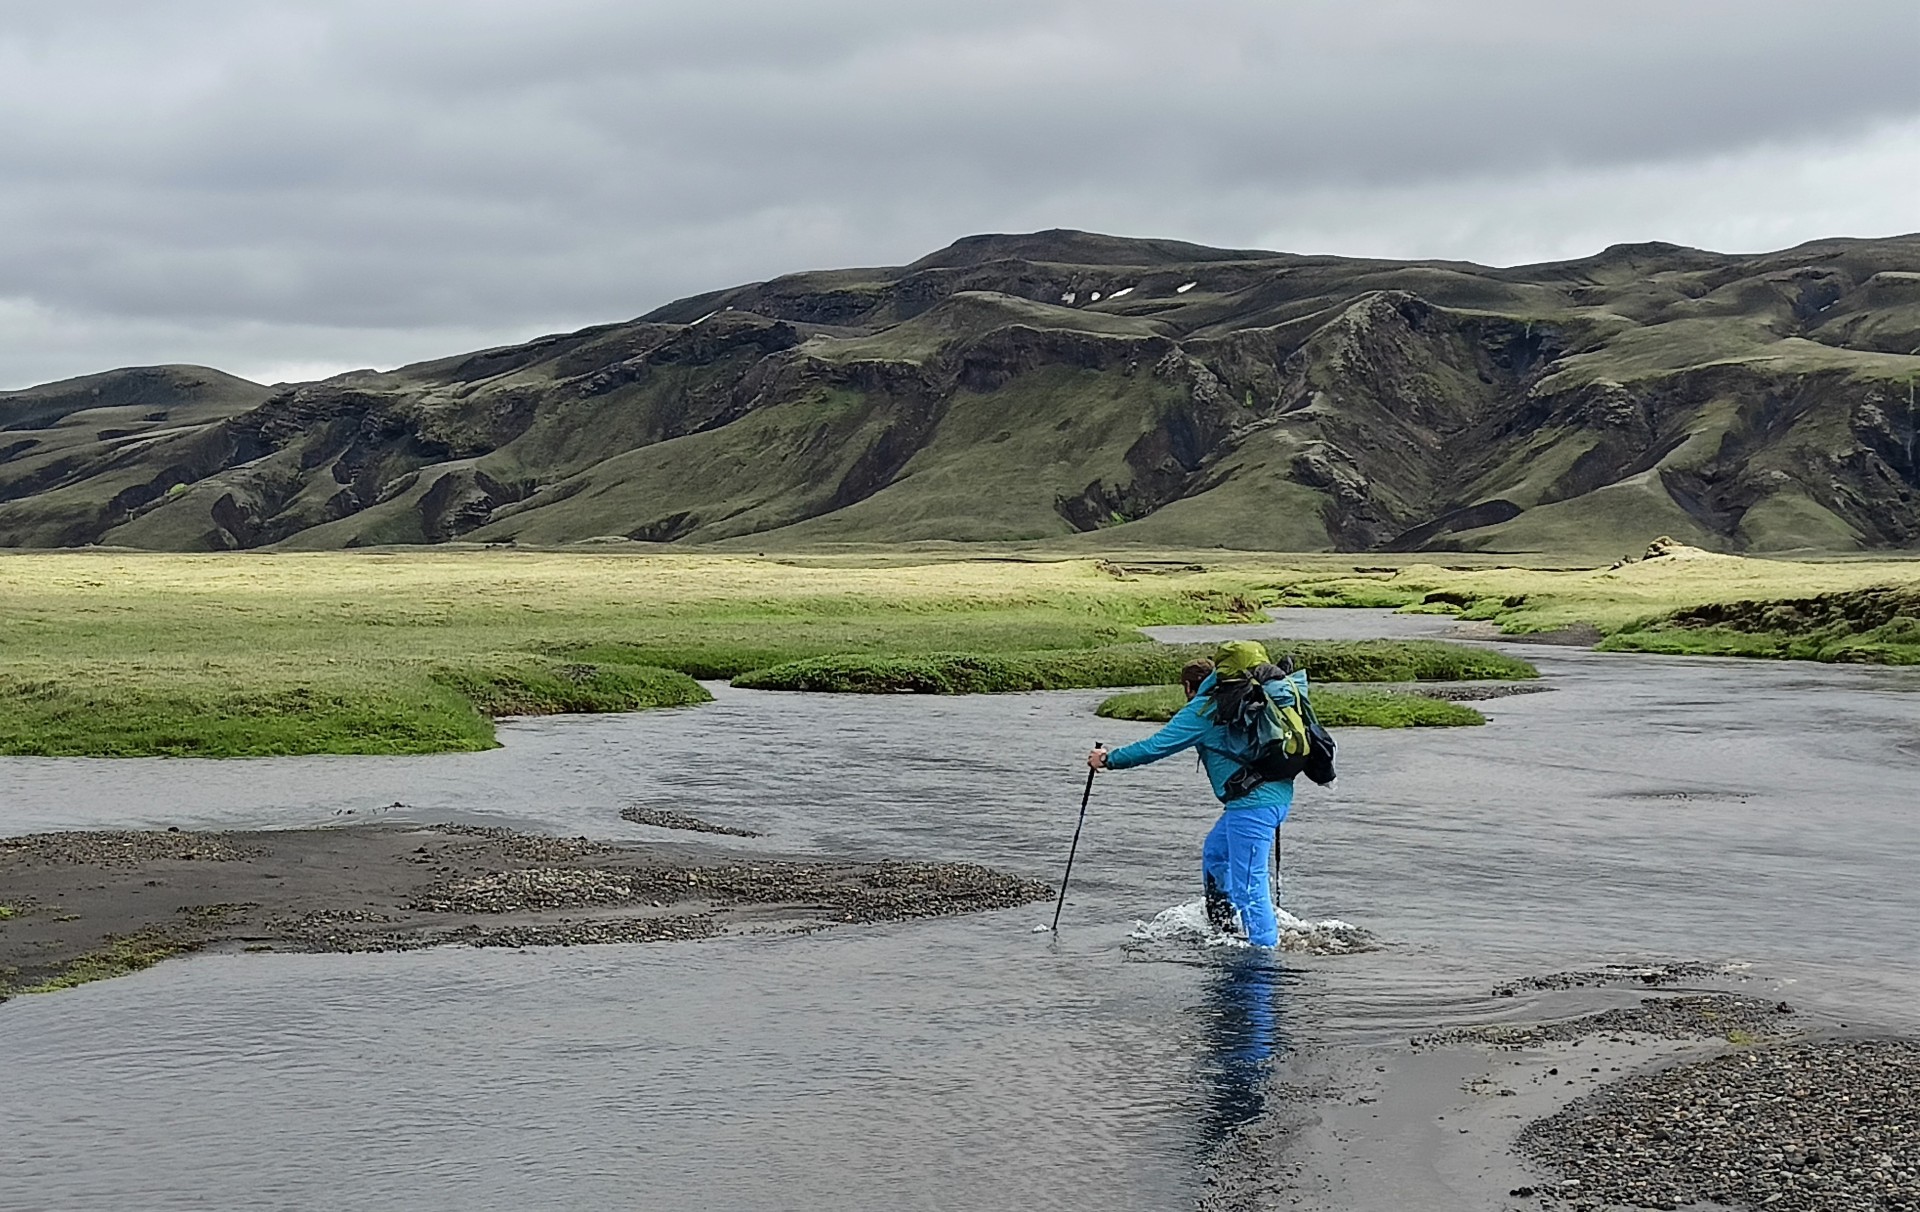 Islanda trek 25